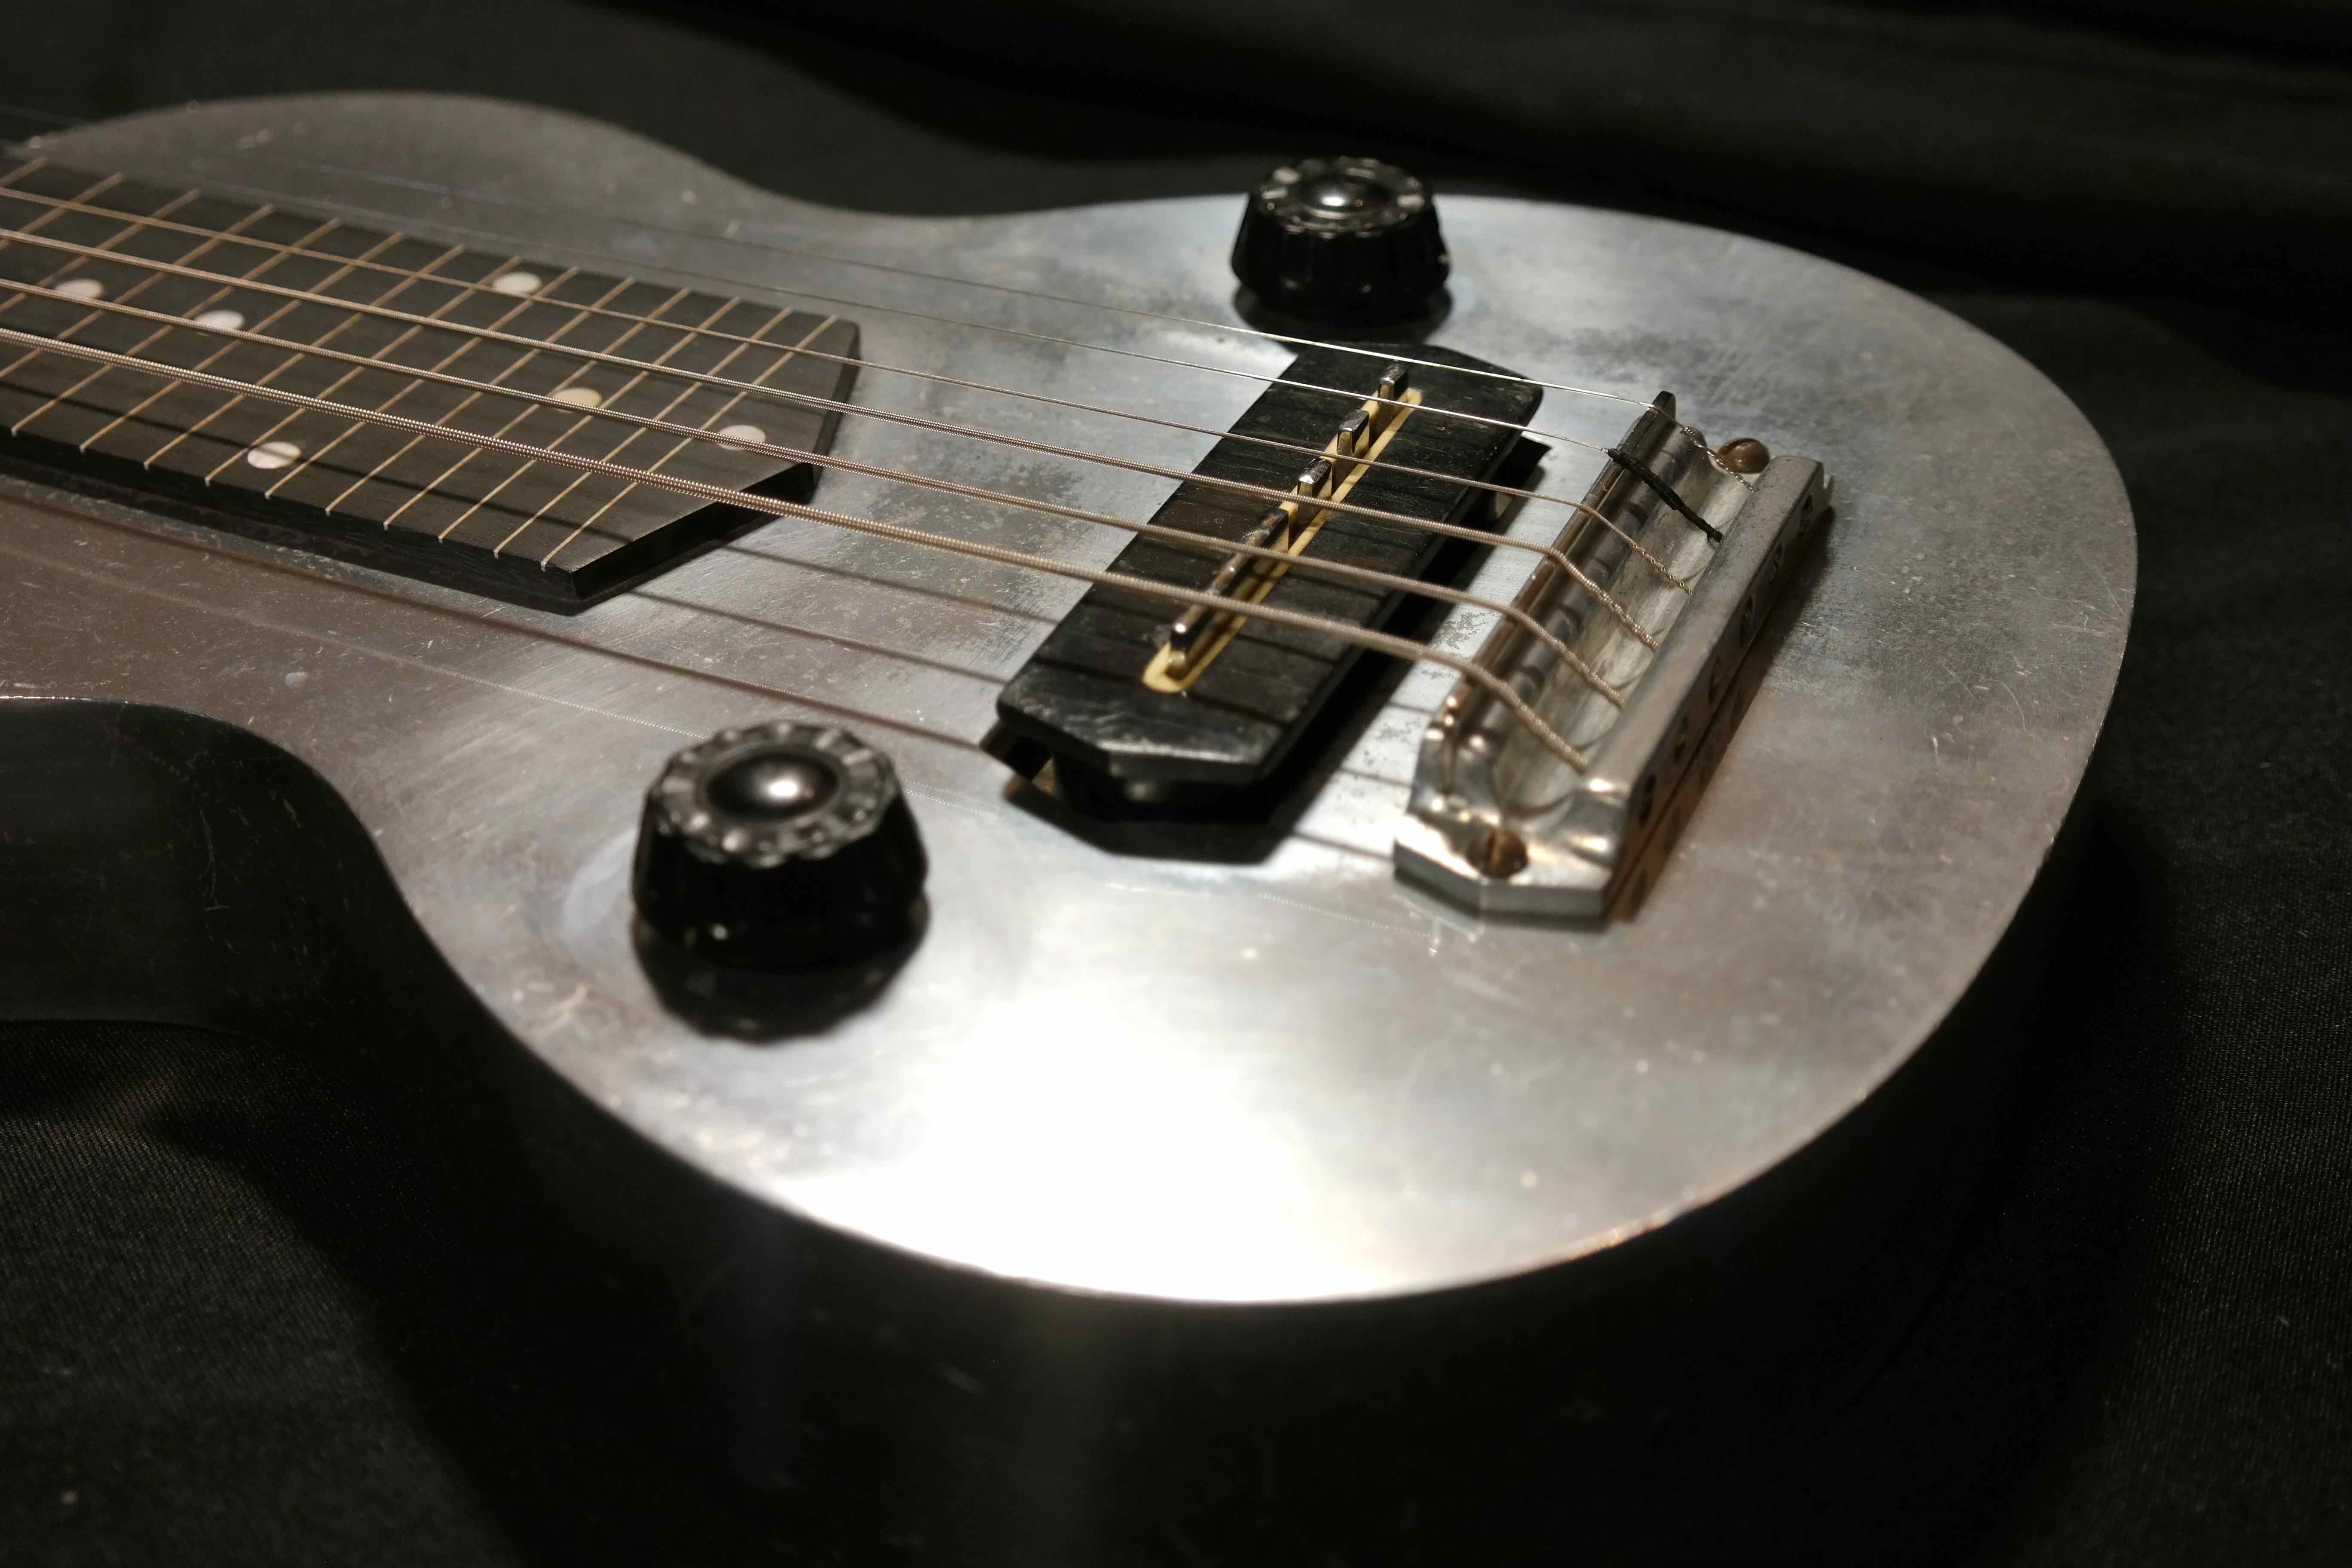 Gibson lap steel guitar serial numbers